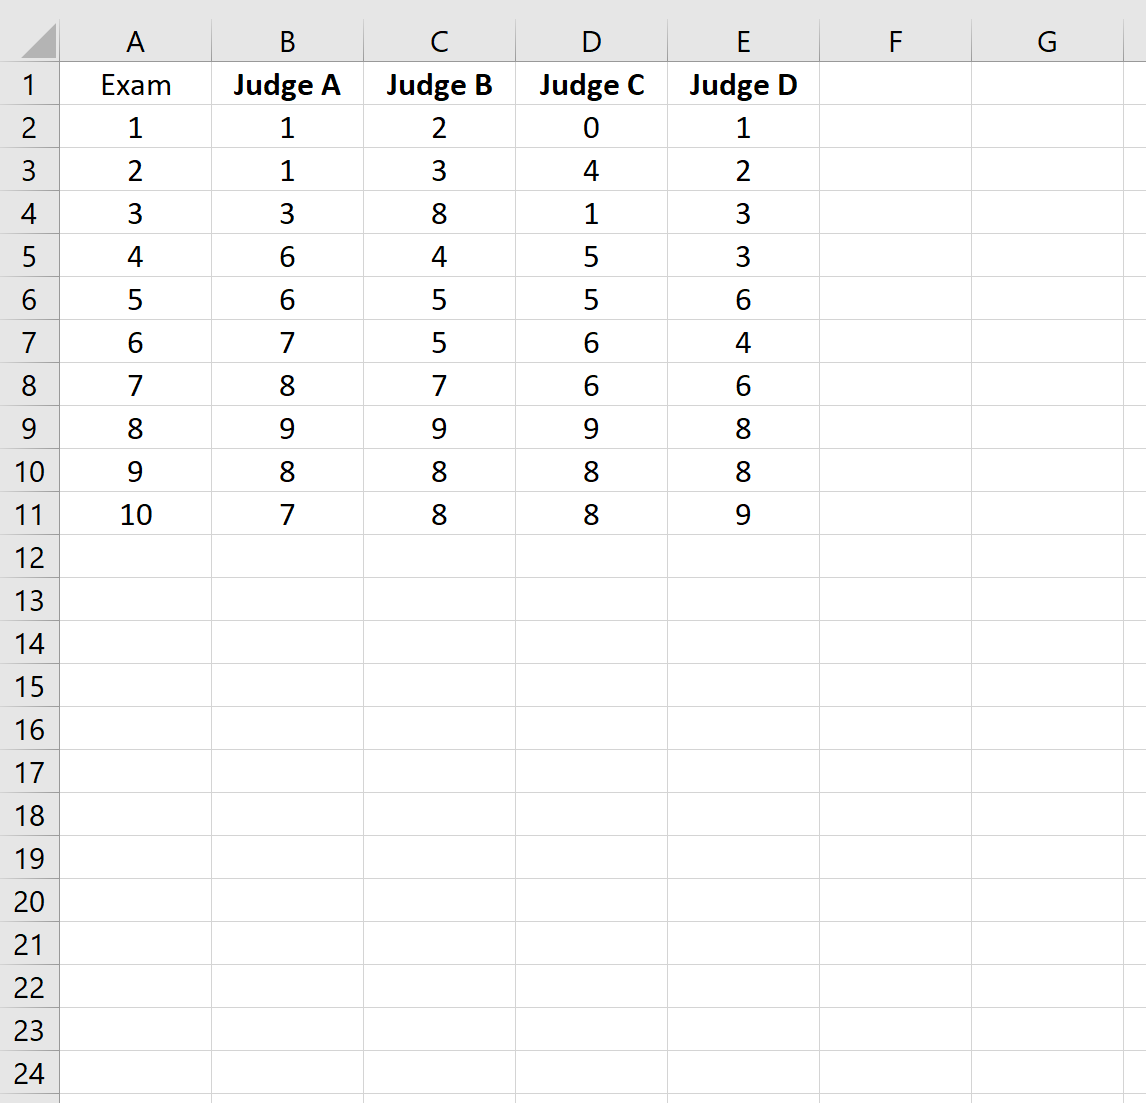 Как рассчитать коэффициент внутриклассовой корреляции в Excel